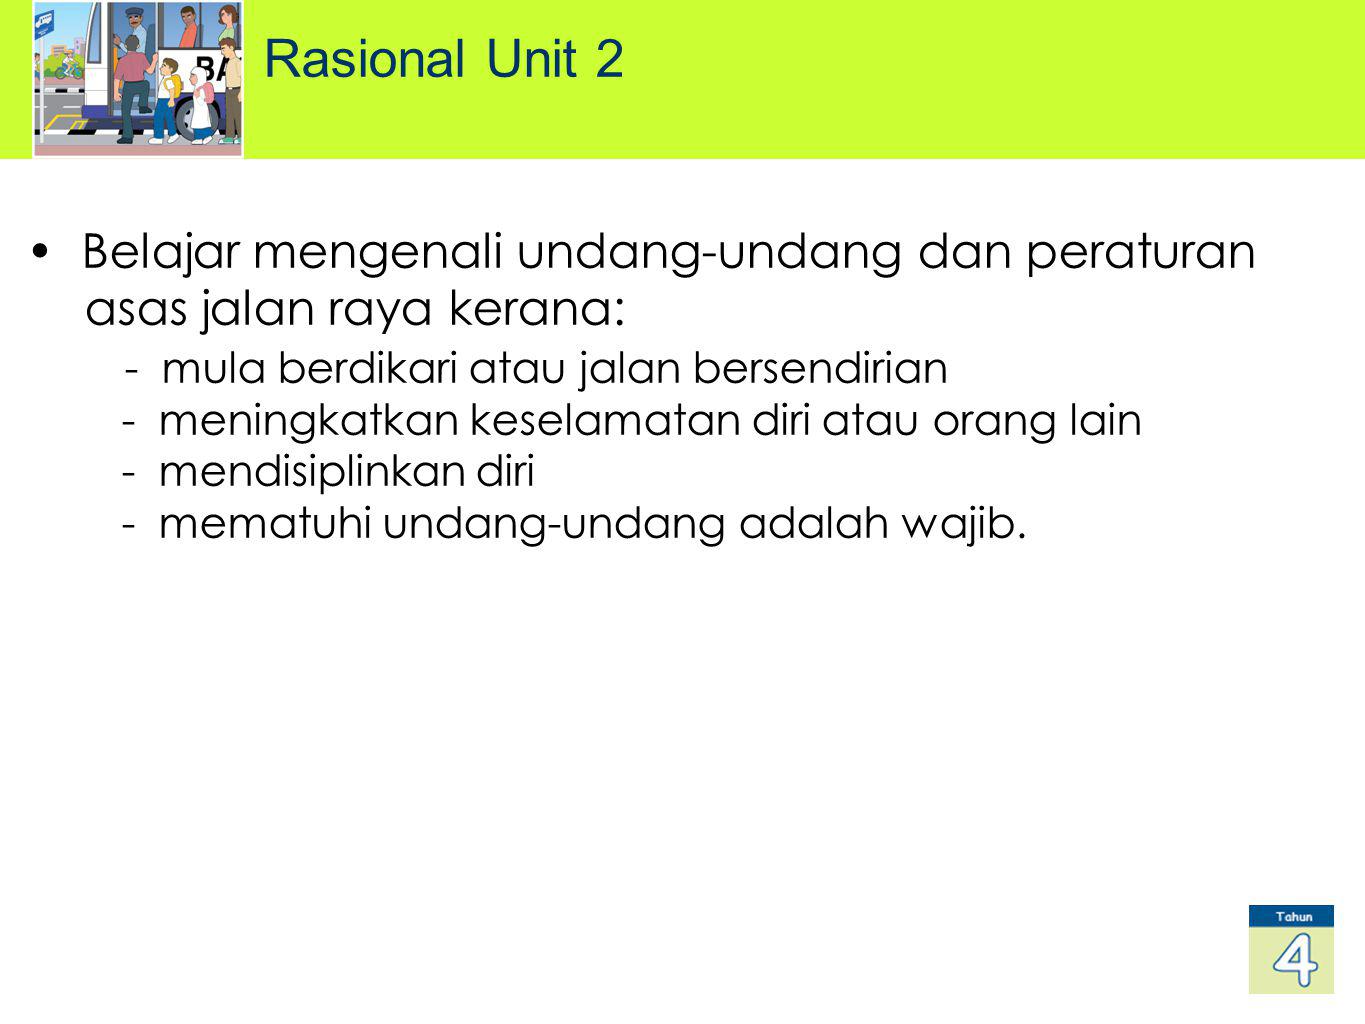 Rasional Unit 2 Belajar mengenali undang-undang dan peraturan